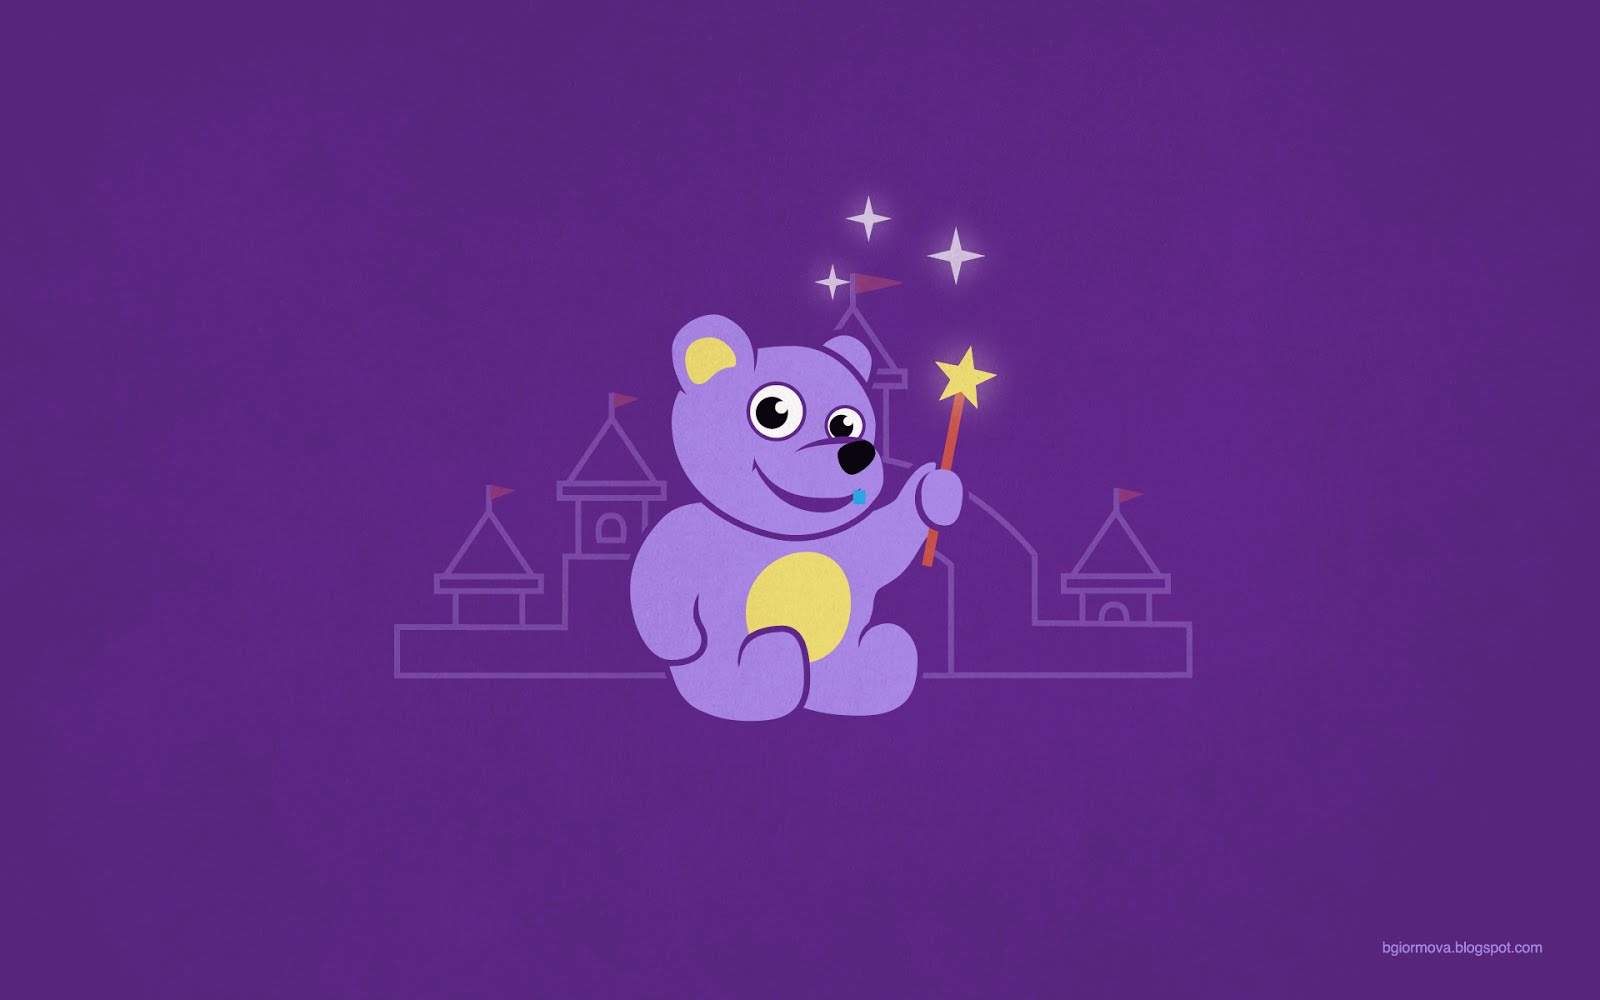 Cute Cartoon Teddy Bear Fairy